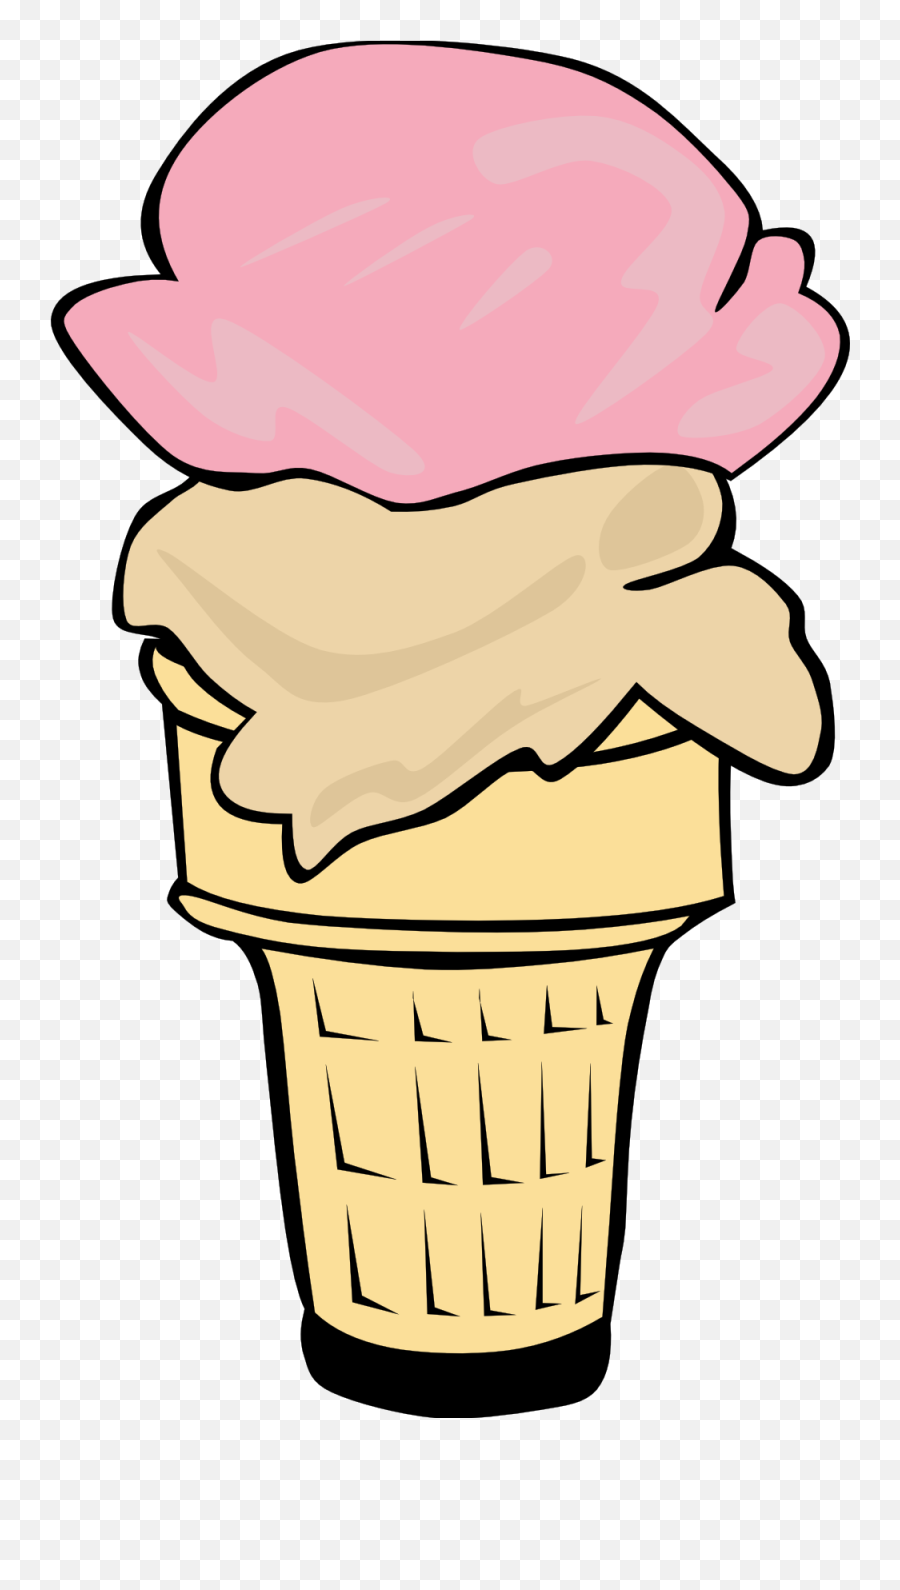 Ice Cream Cone Clip Art 8 - Ice Cream Cone Clip Art Transparent Background Emoji,Ice Cream Sun Emoji